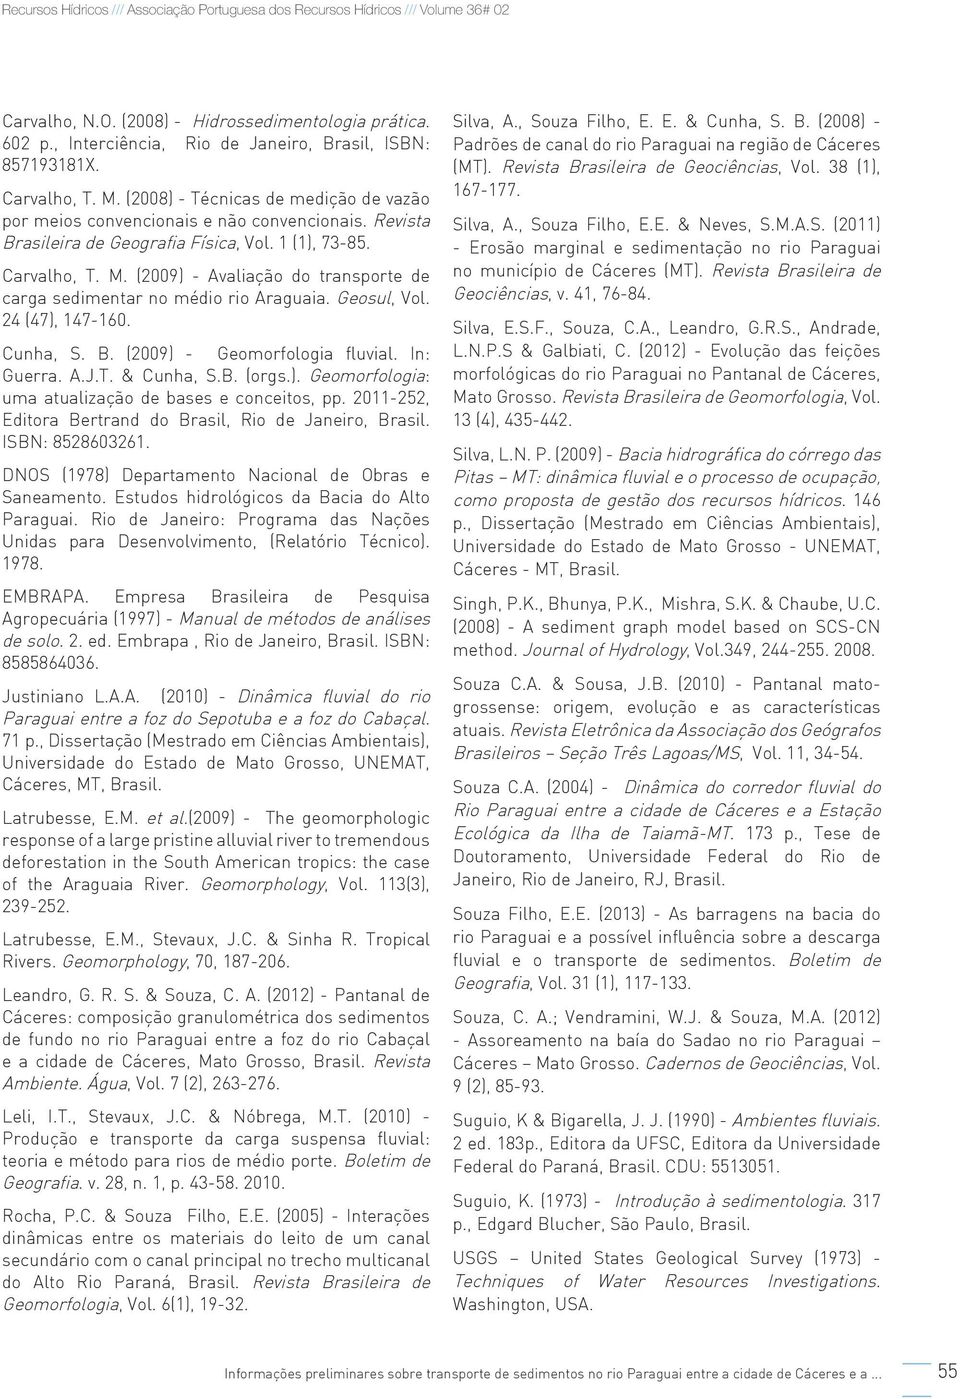 (2009) - Avaliação do transporte de carga sedimentar no médio rio Araguaia. Geosul, Vol. 24 (47), 147-160. Cunha, S. B. (2009) - Geomorfologia fluvial. In: Guerra. A.J.T. & Cunha, S.B. (orgs.). Geomorfologia: uma atualização de bases e conceitos, pp.